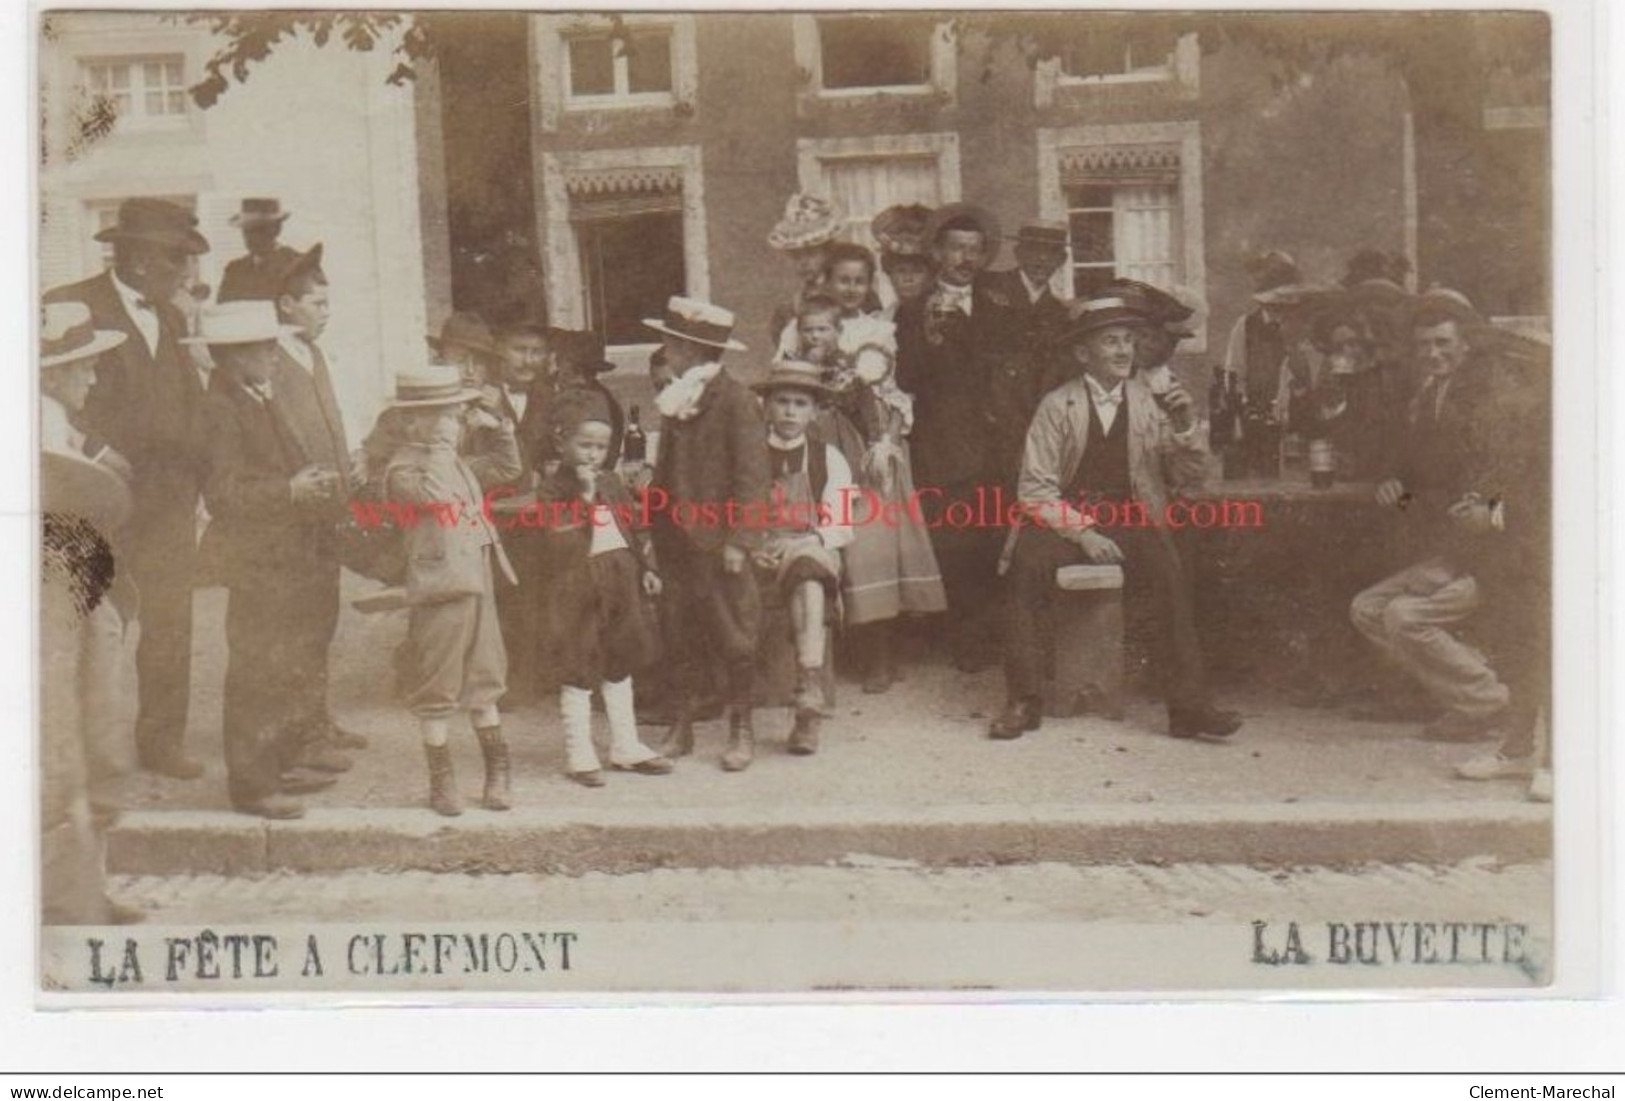 CLEFMONT : Carte Photo De La Fête Vers 1905 (la Buvette) - Très Bon état - Clefmont